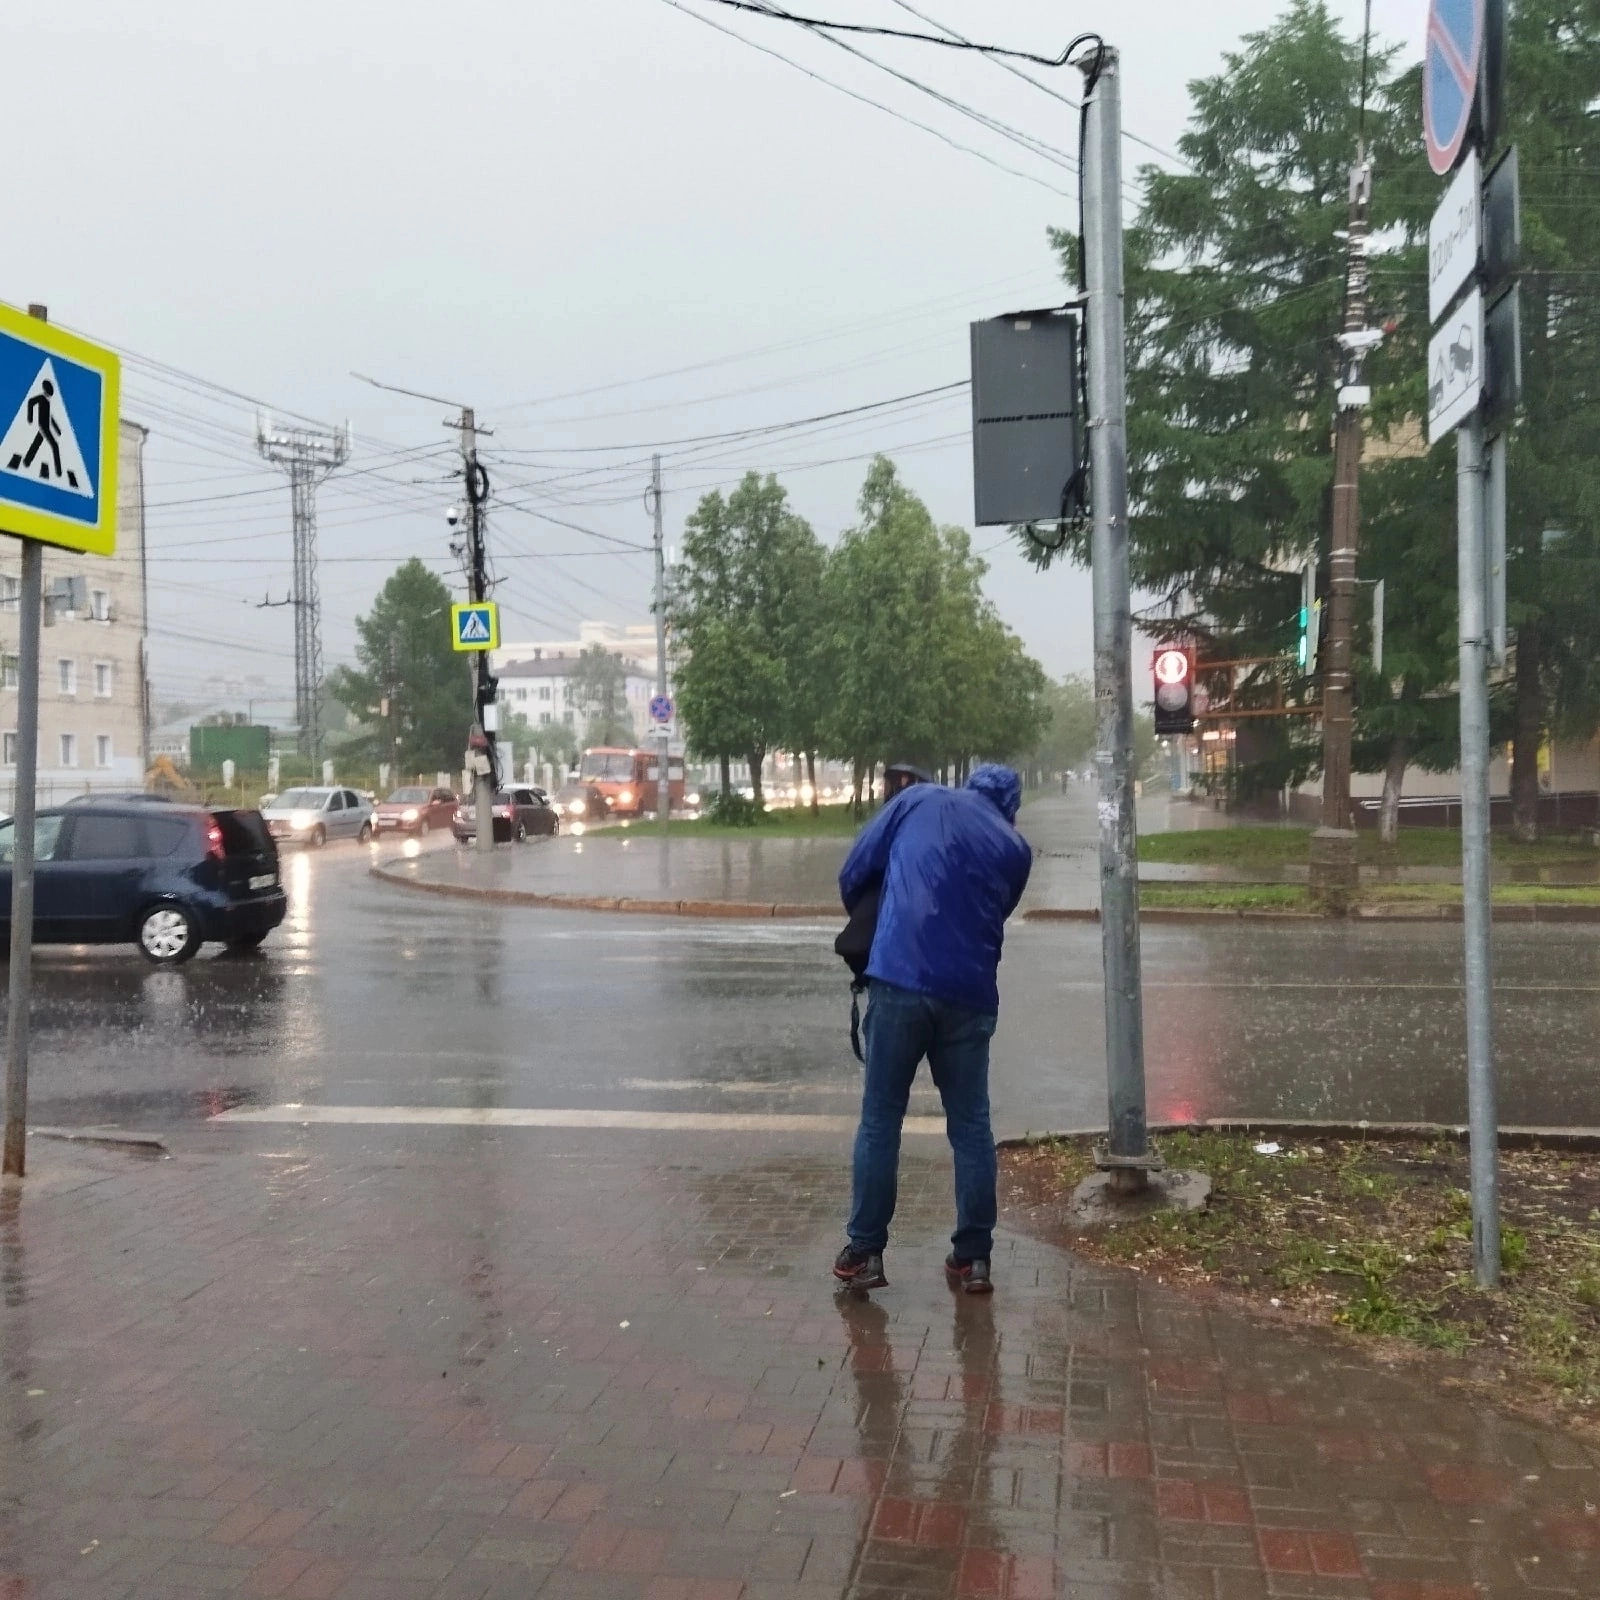 Дождь и порывистый ветер: синоптики озвучили прогноз погоды в Кирове на 25 июня 